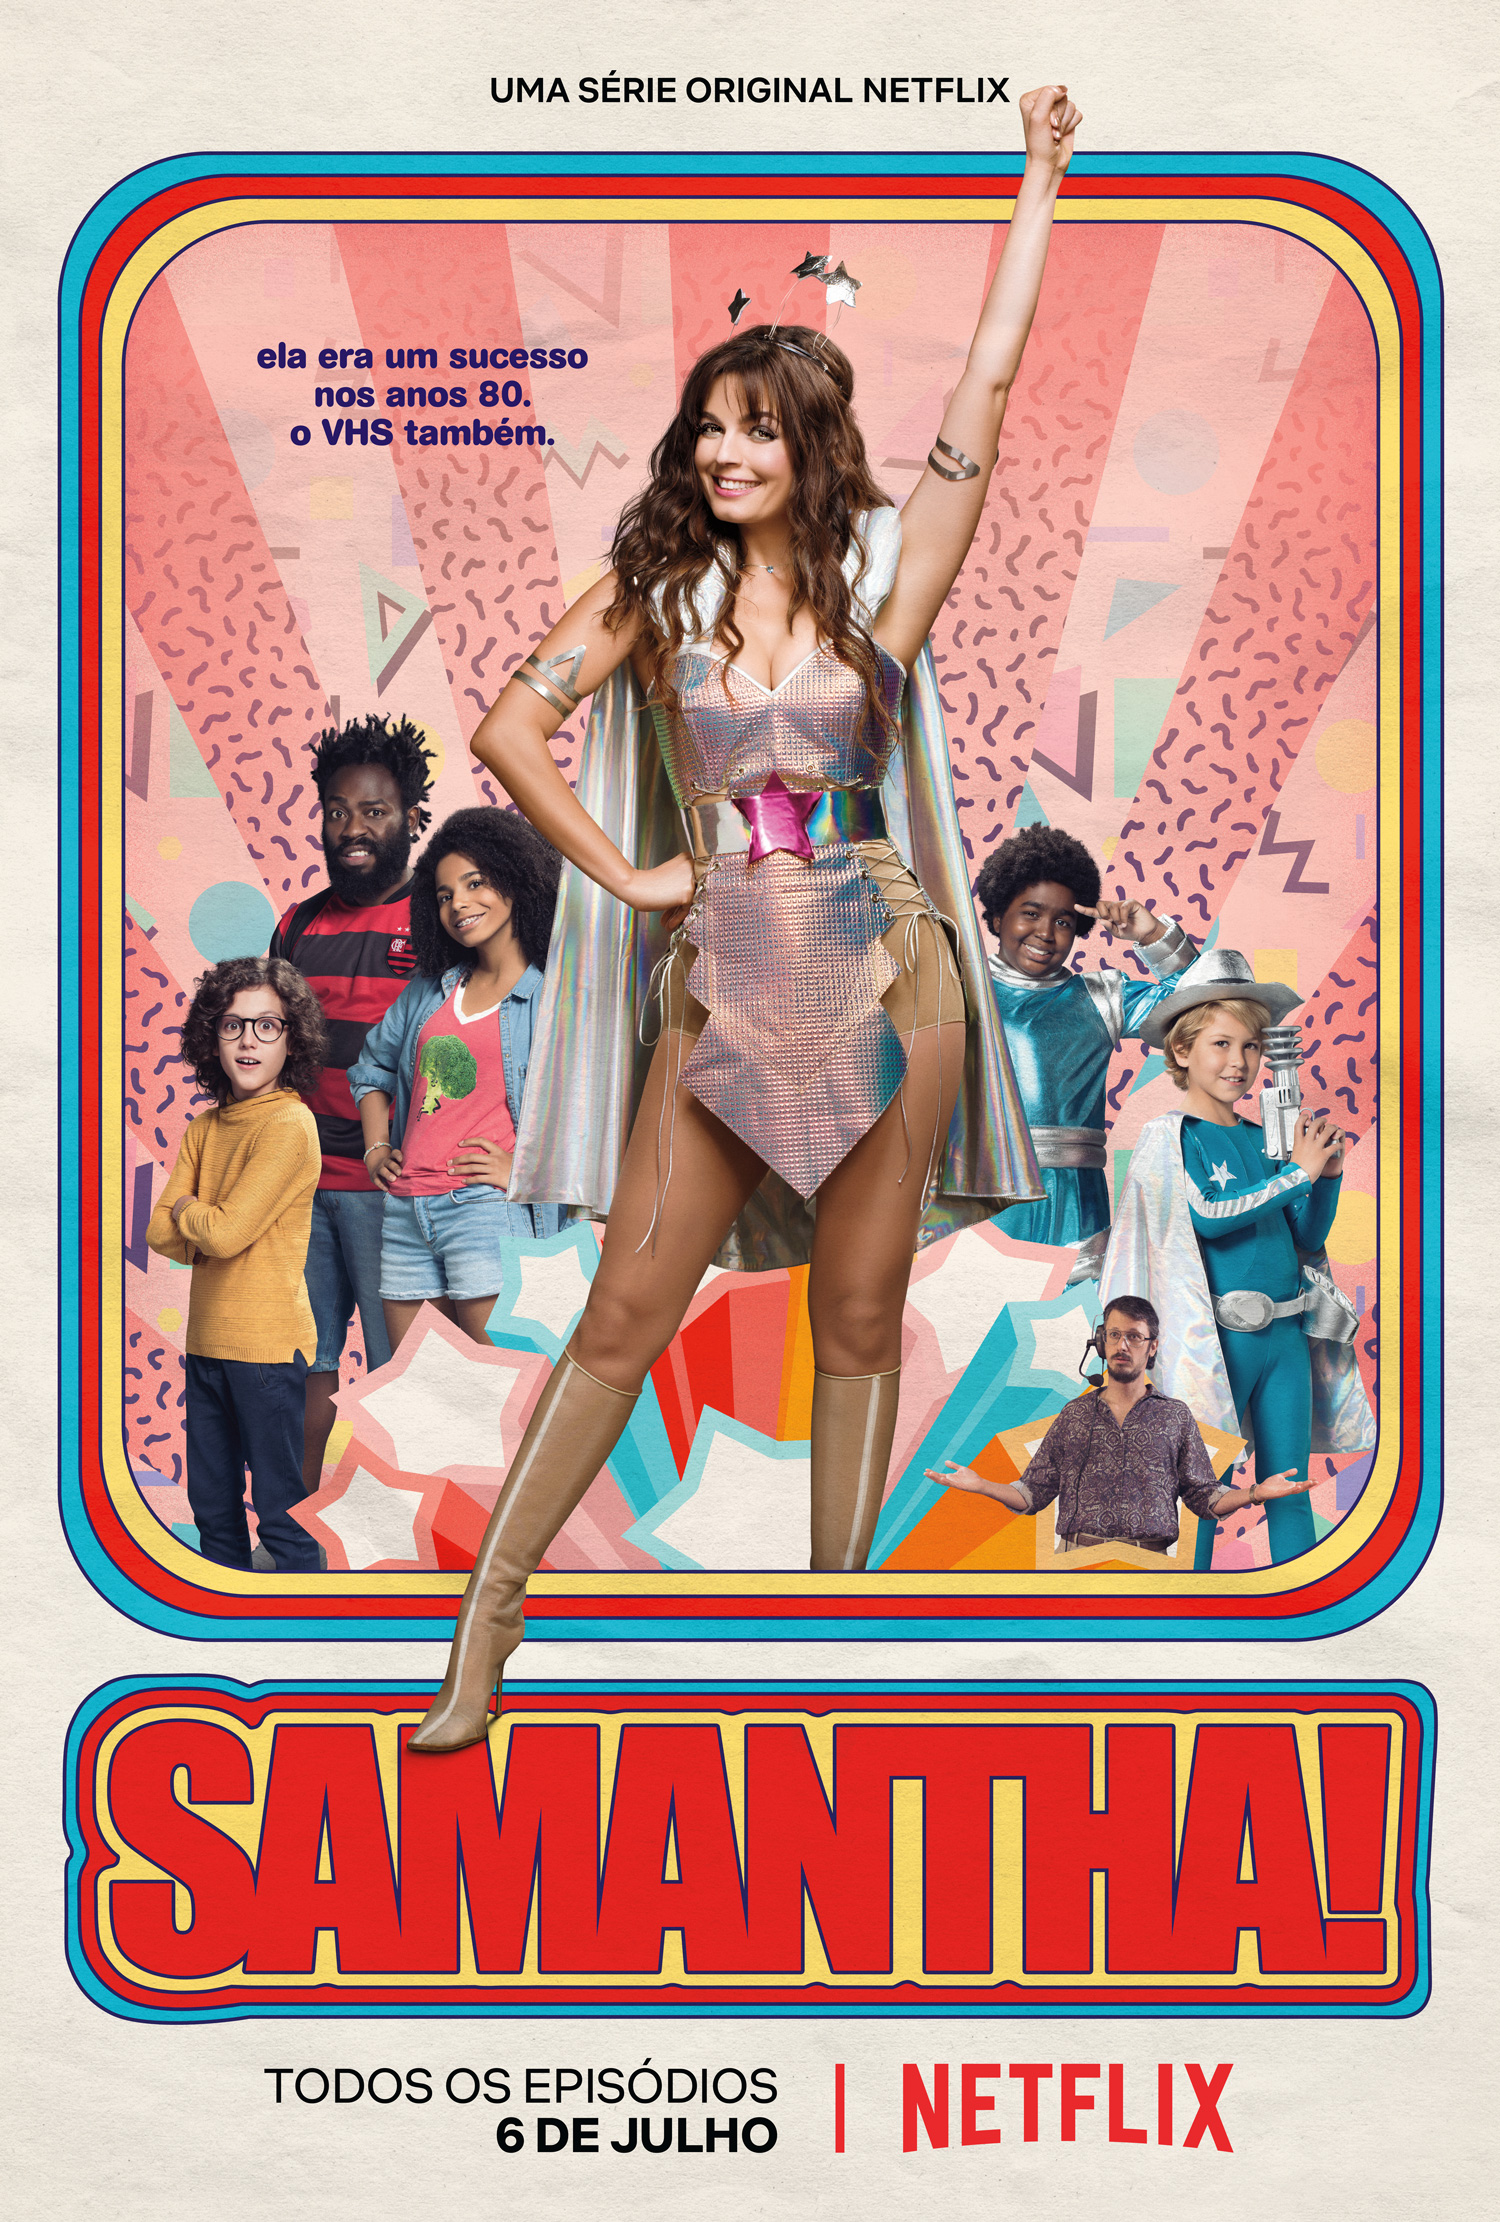 Samantha!, série brasileira da Netflix, ganha trailer oficial